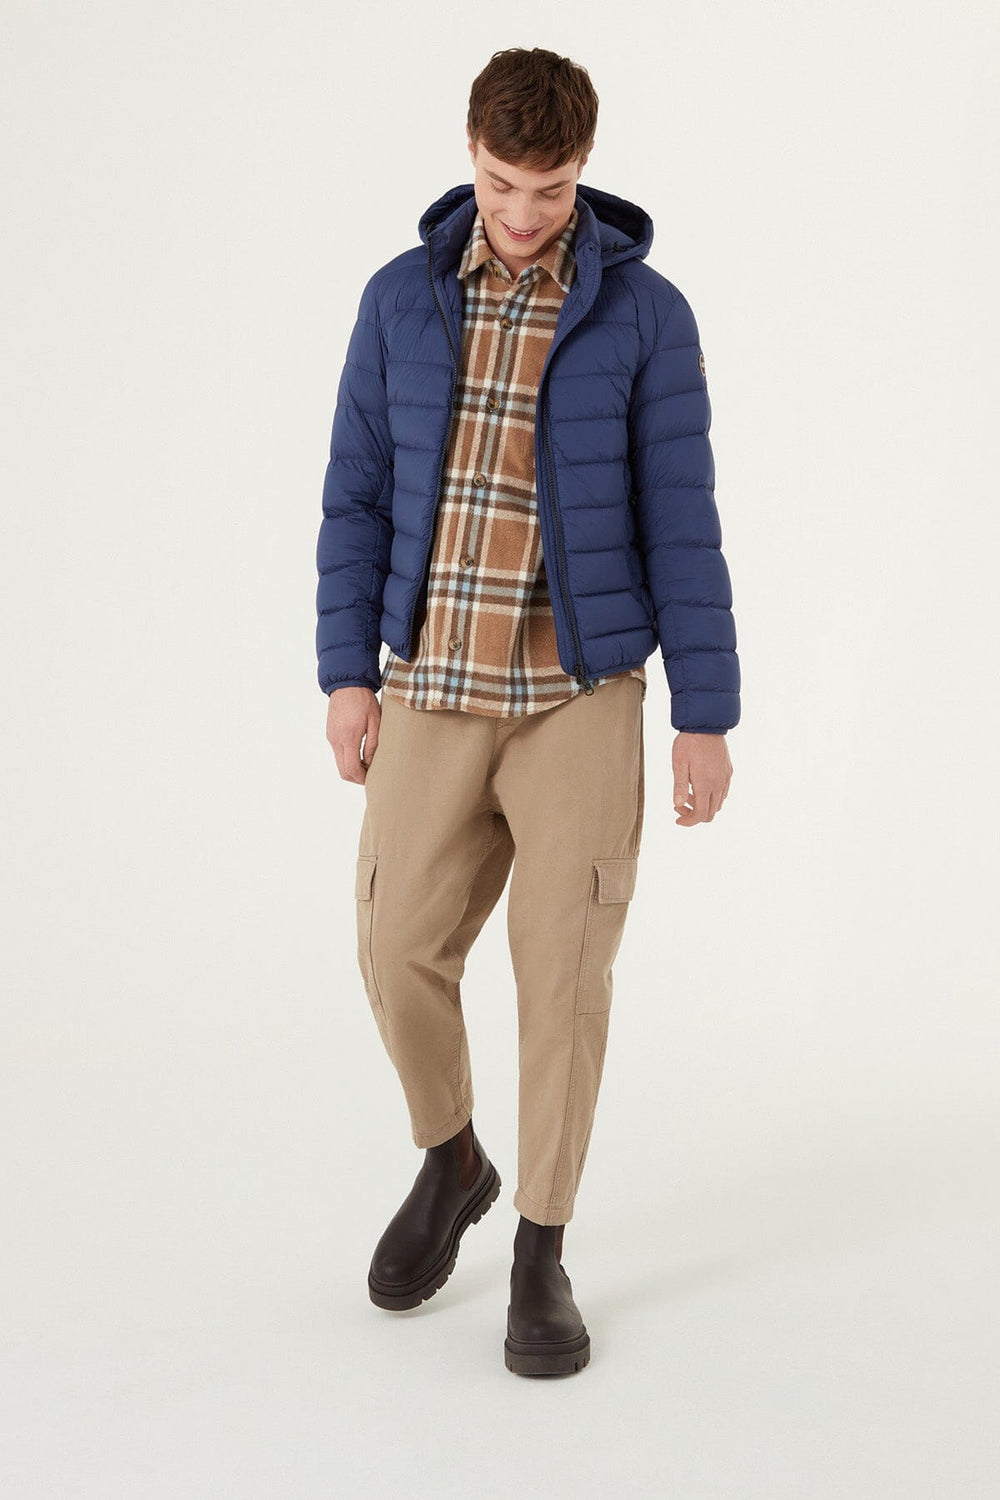 Doudoune extensible avec capuche amovible Homme - Manteaux et vestes - Manteau d'hiver Colmar